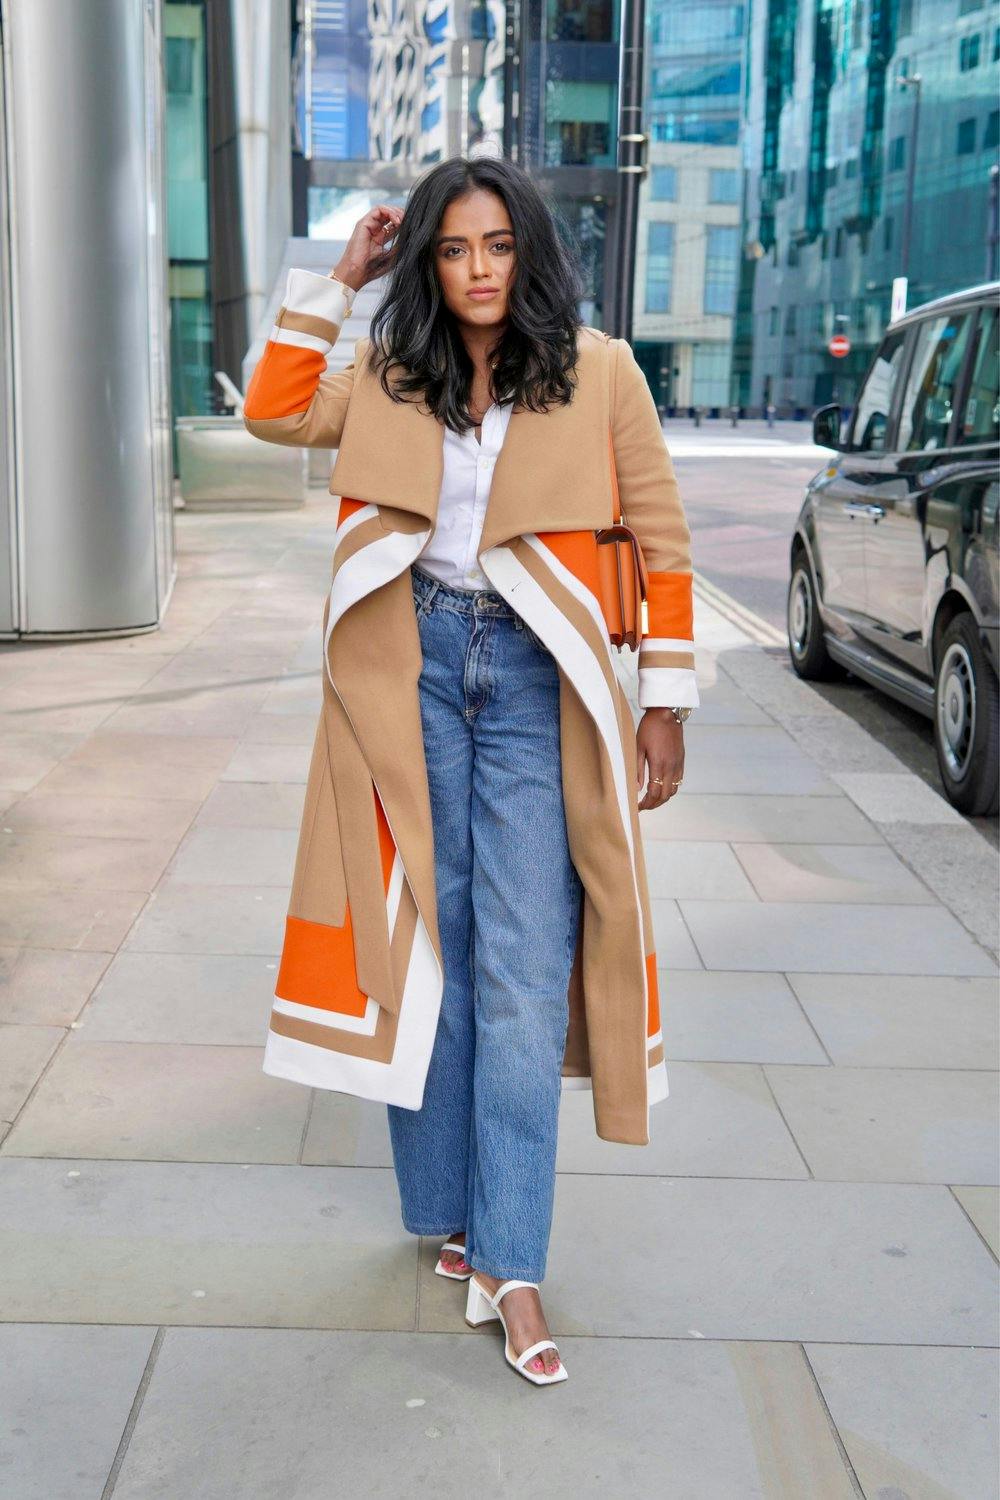 Sachini wearing a Karen Millen Coat in London